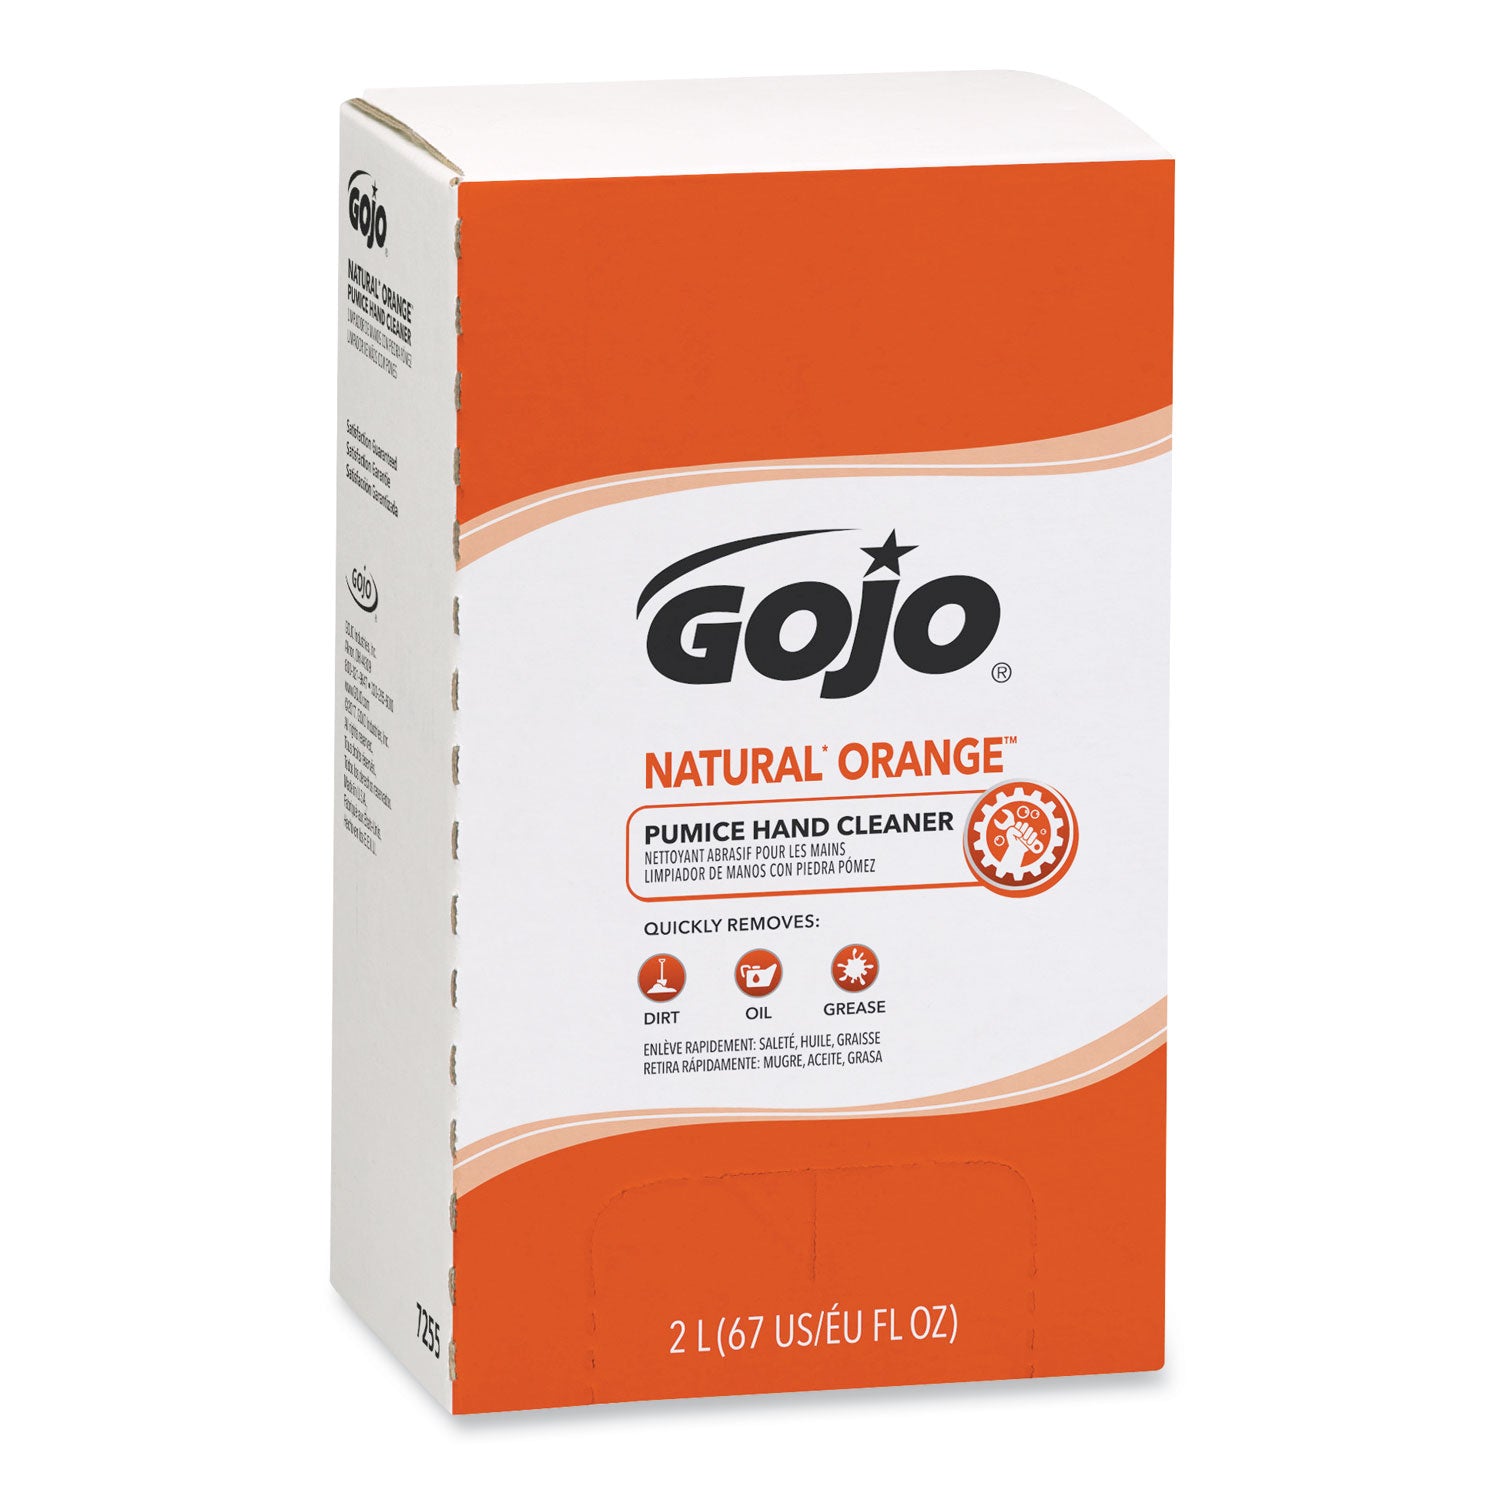 natural-orange-pumice-hand-cleaner-refill-citrus-scent-2000ml-4-carton_goj7255 - 2